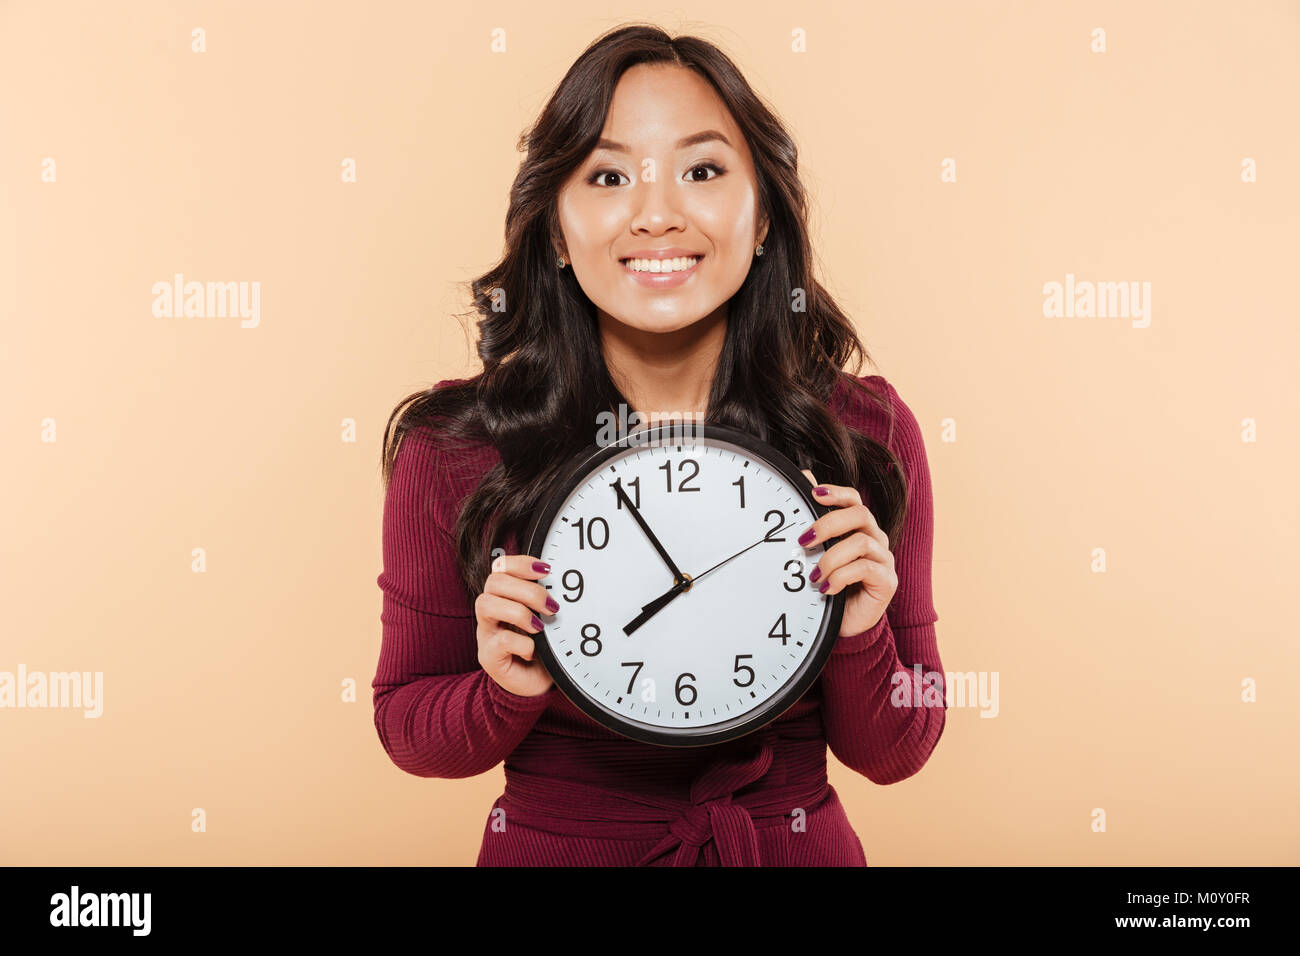 Glückliche Gefühle der asiatische Frau mit dem lockigen langen Haare, die Uhr zeigt fast 8, warten auf etwas Angenehmes über Pfirsich Hintergrund Stockfoto